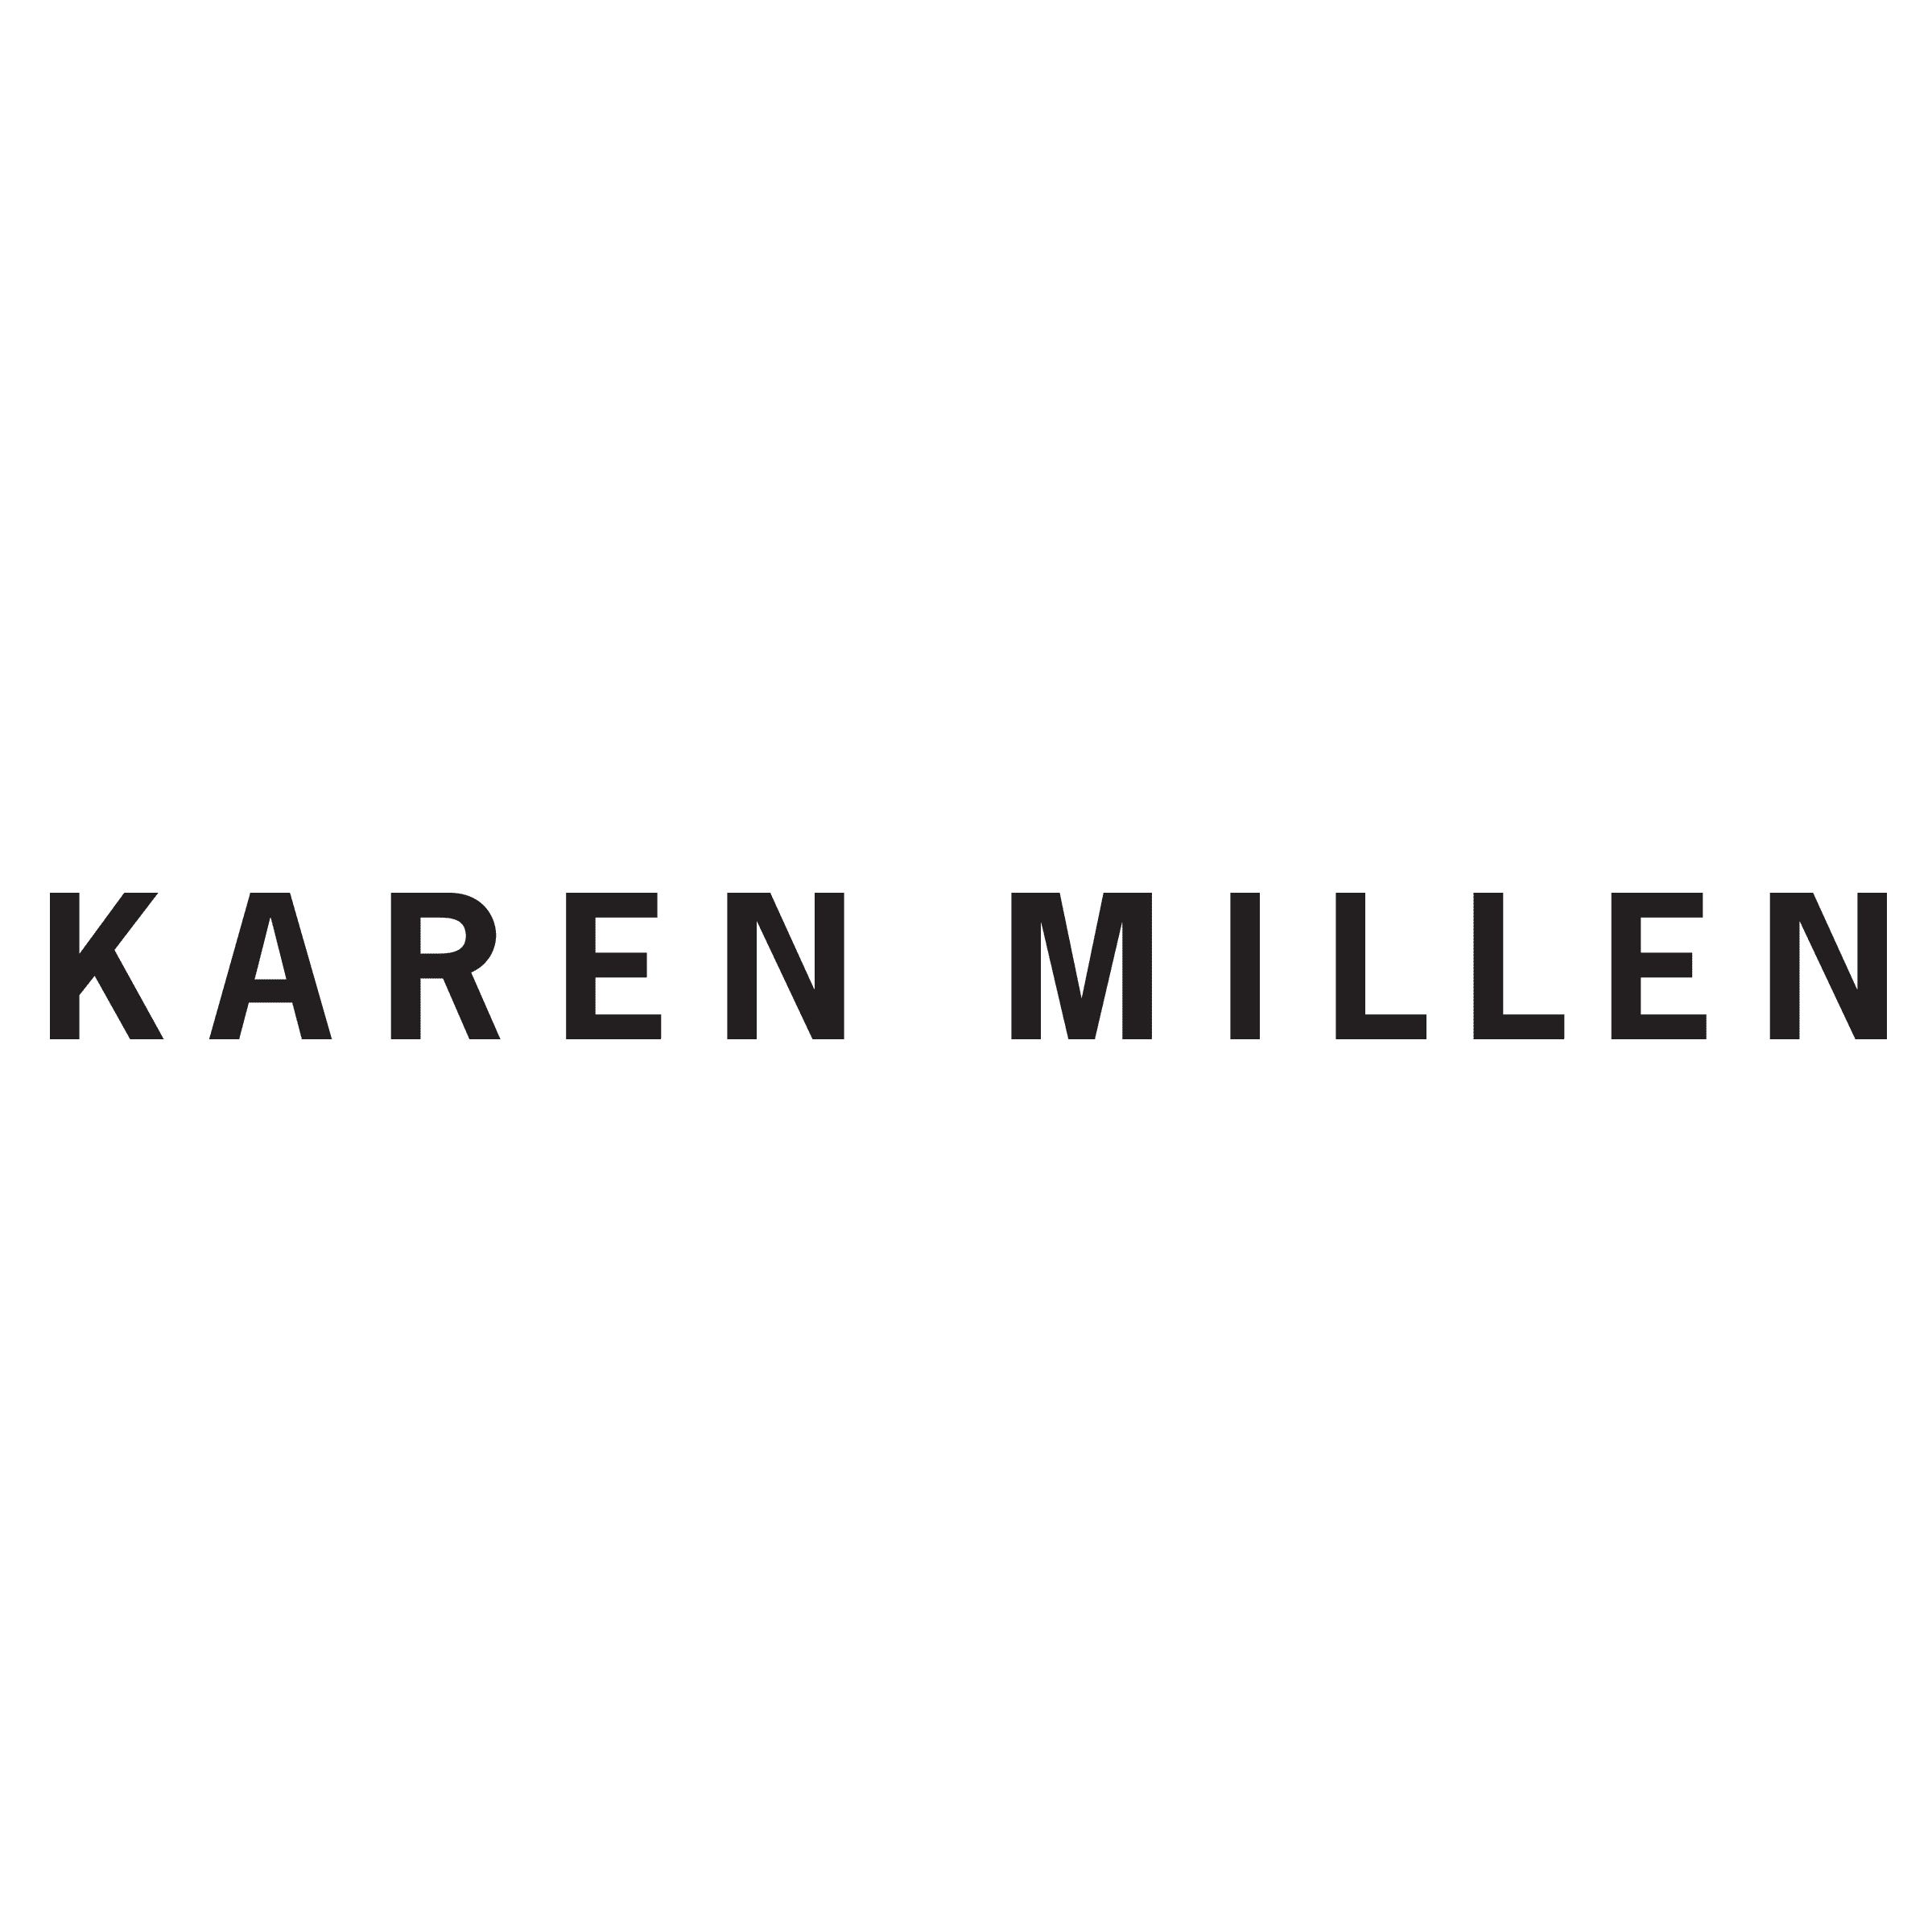 Karen Millen  Discount Codes, Promo Codes & Deals for May 2021